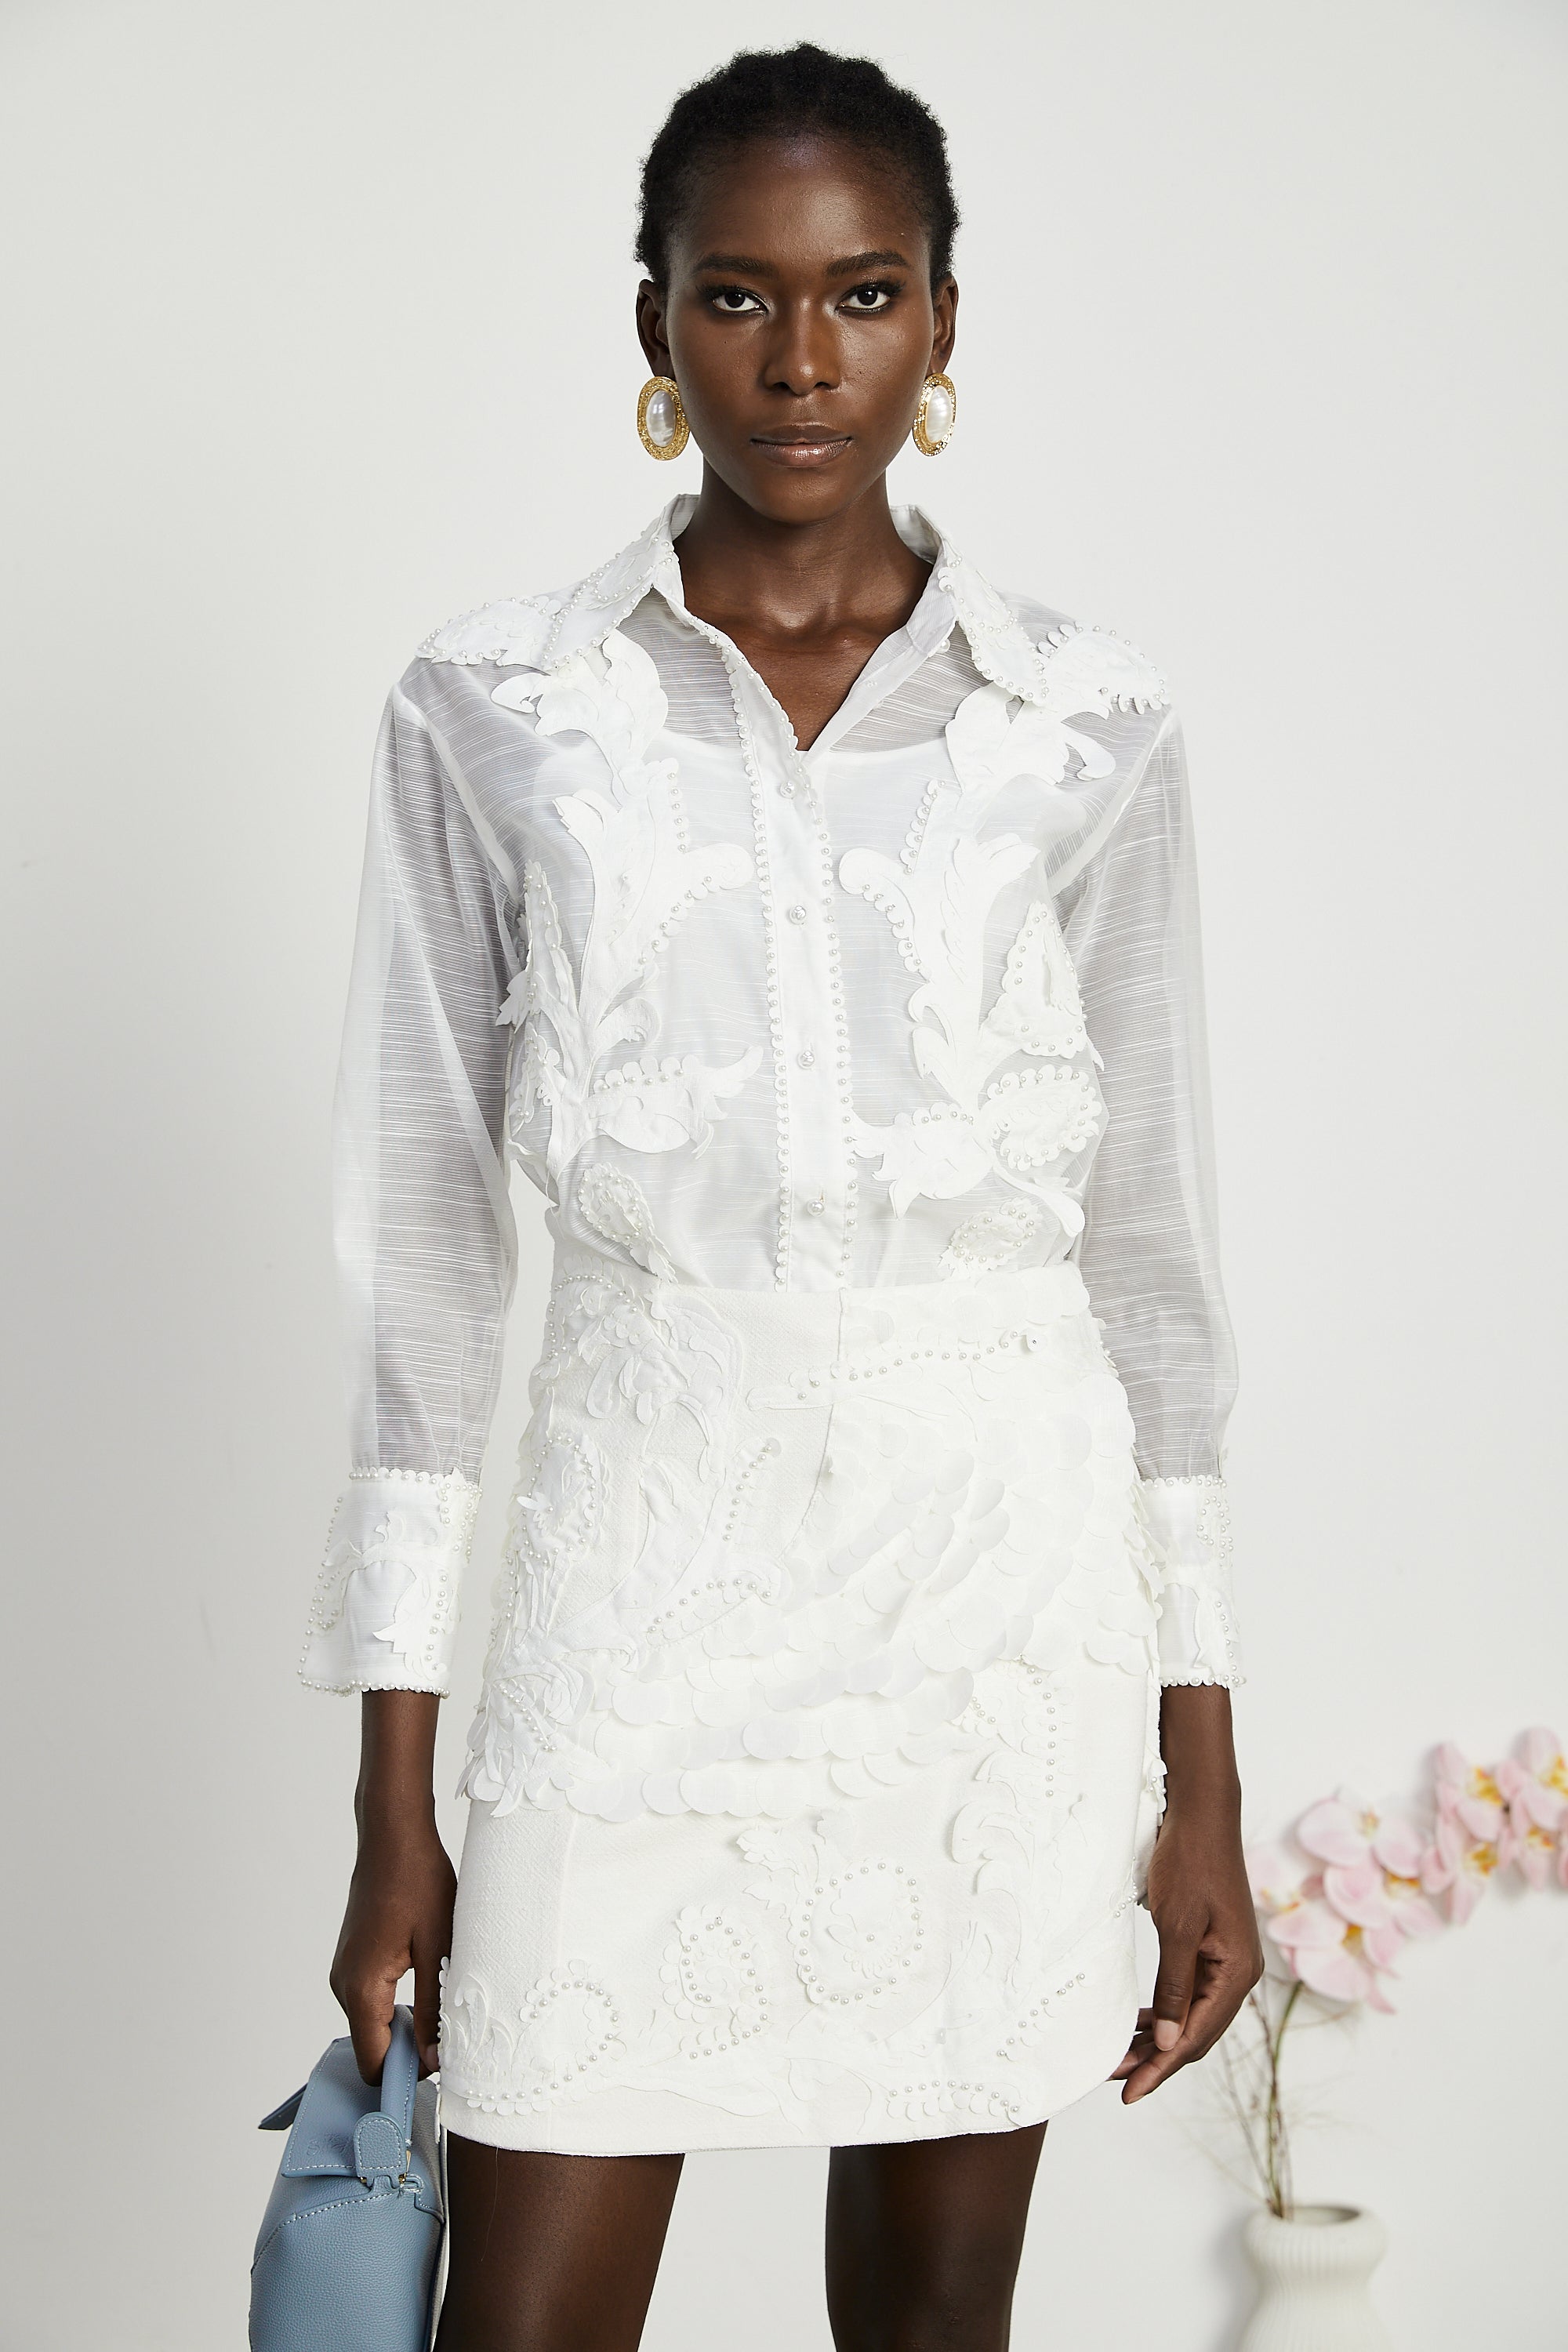 Isabeau lace embroideried shirt & skirt matching set